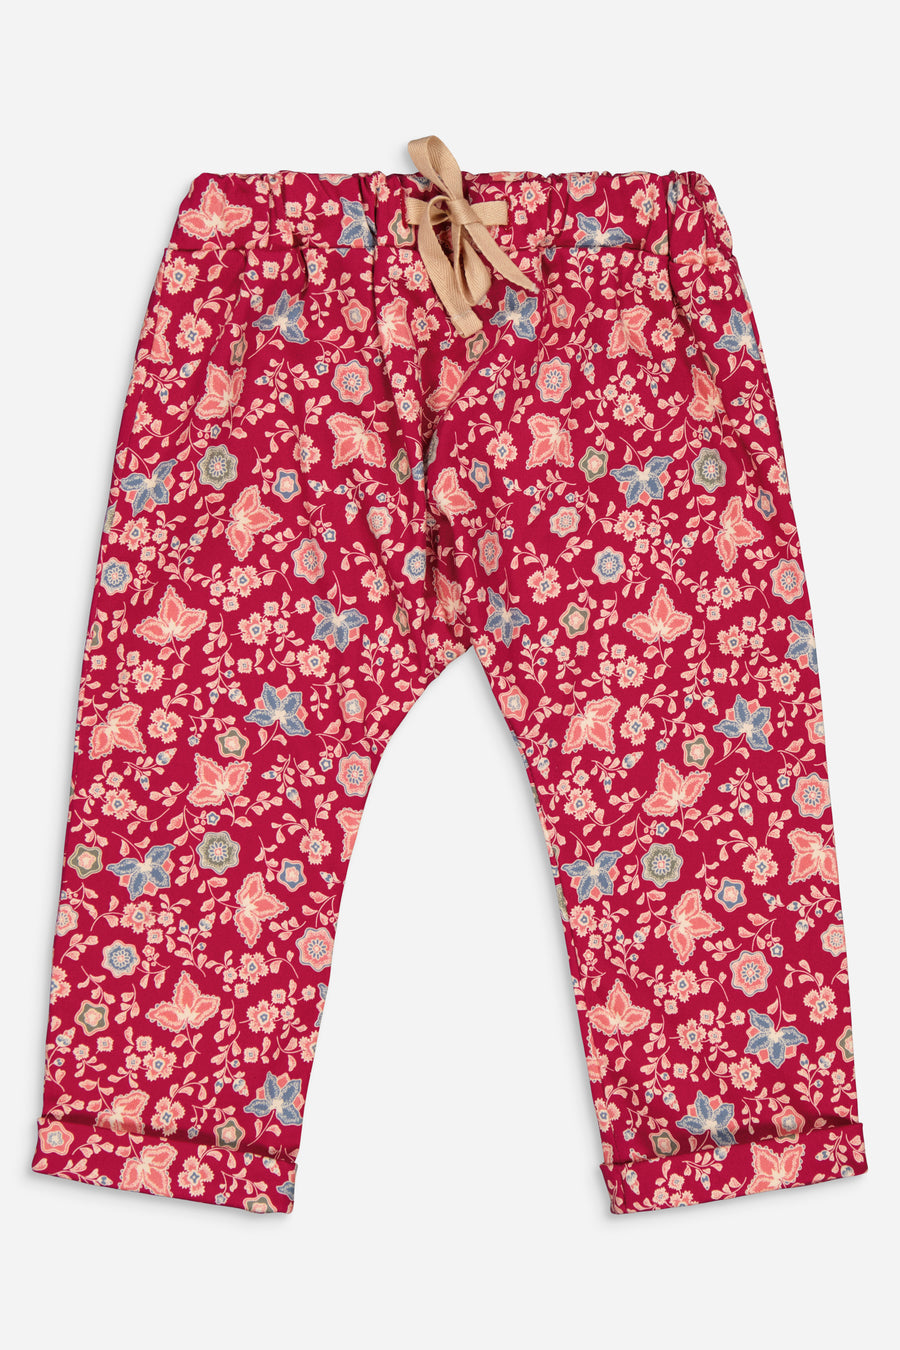 Pantalon Marcel ##2522 Fleurs Bordeaux